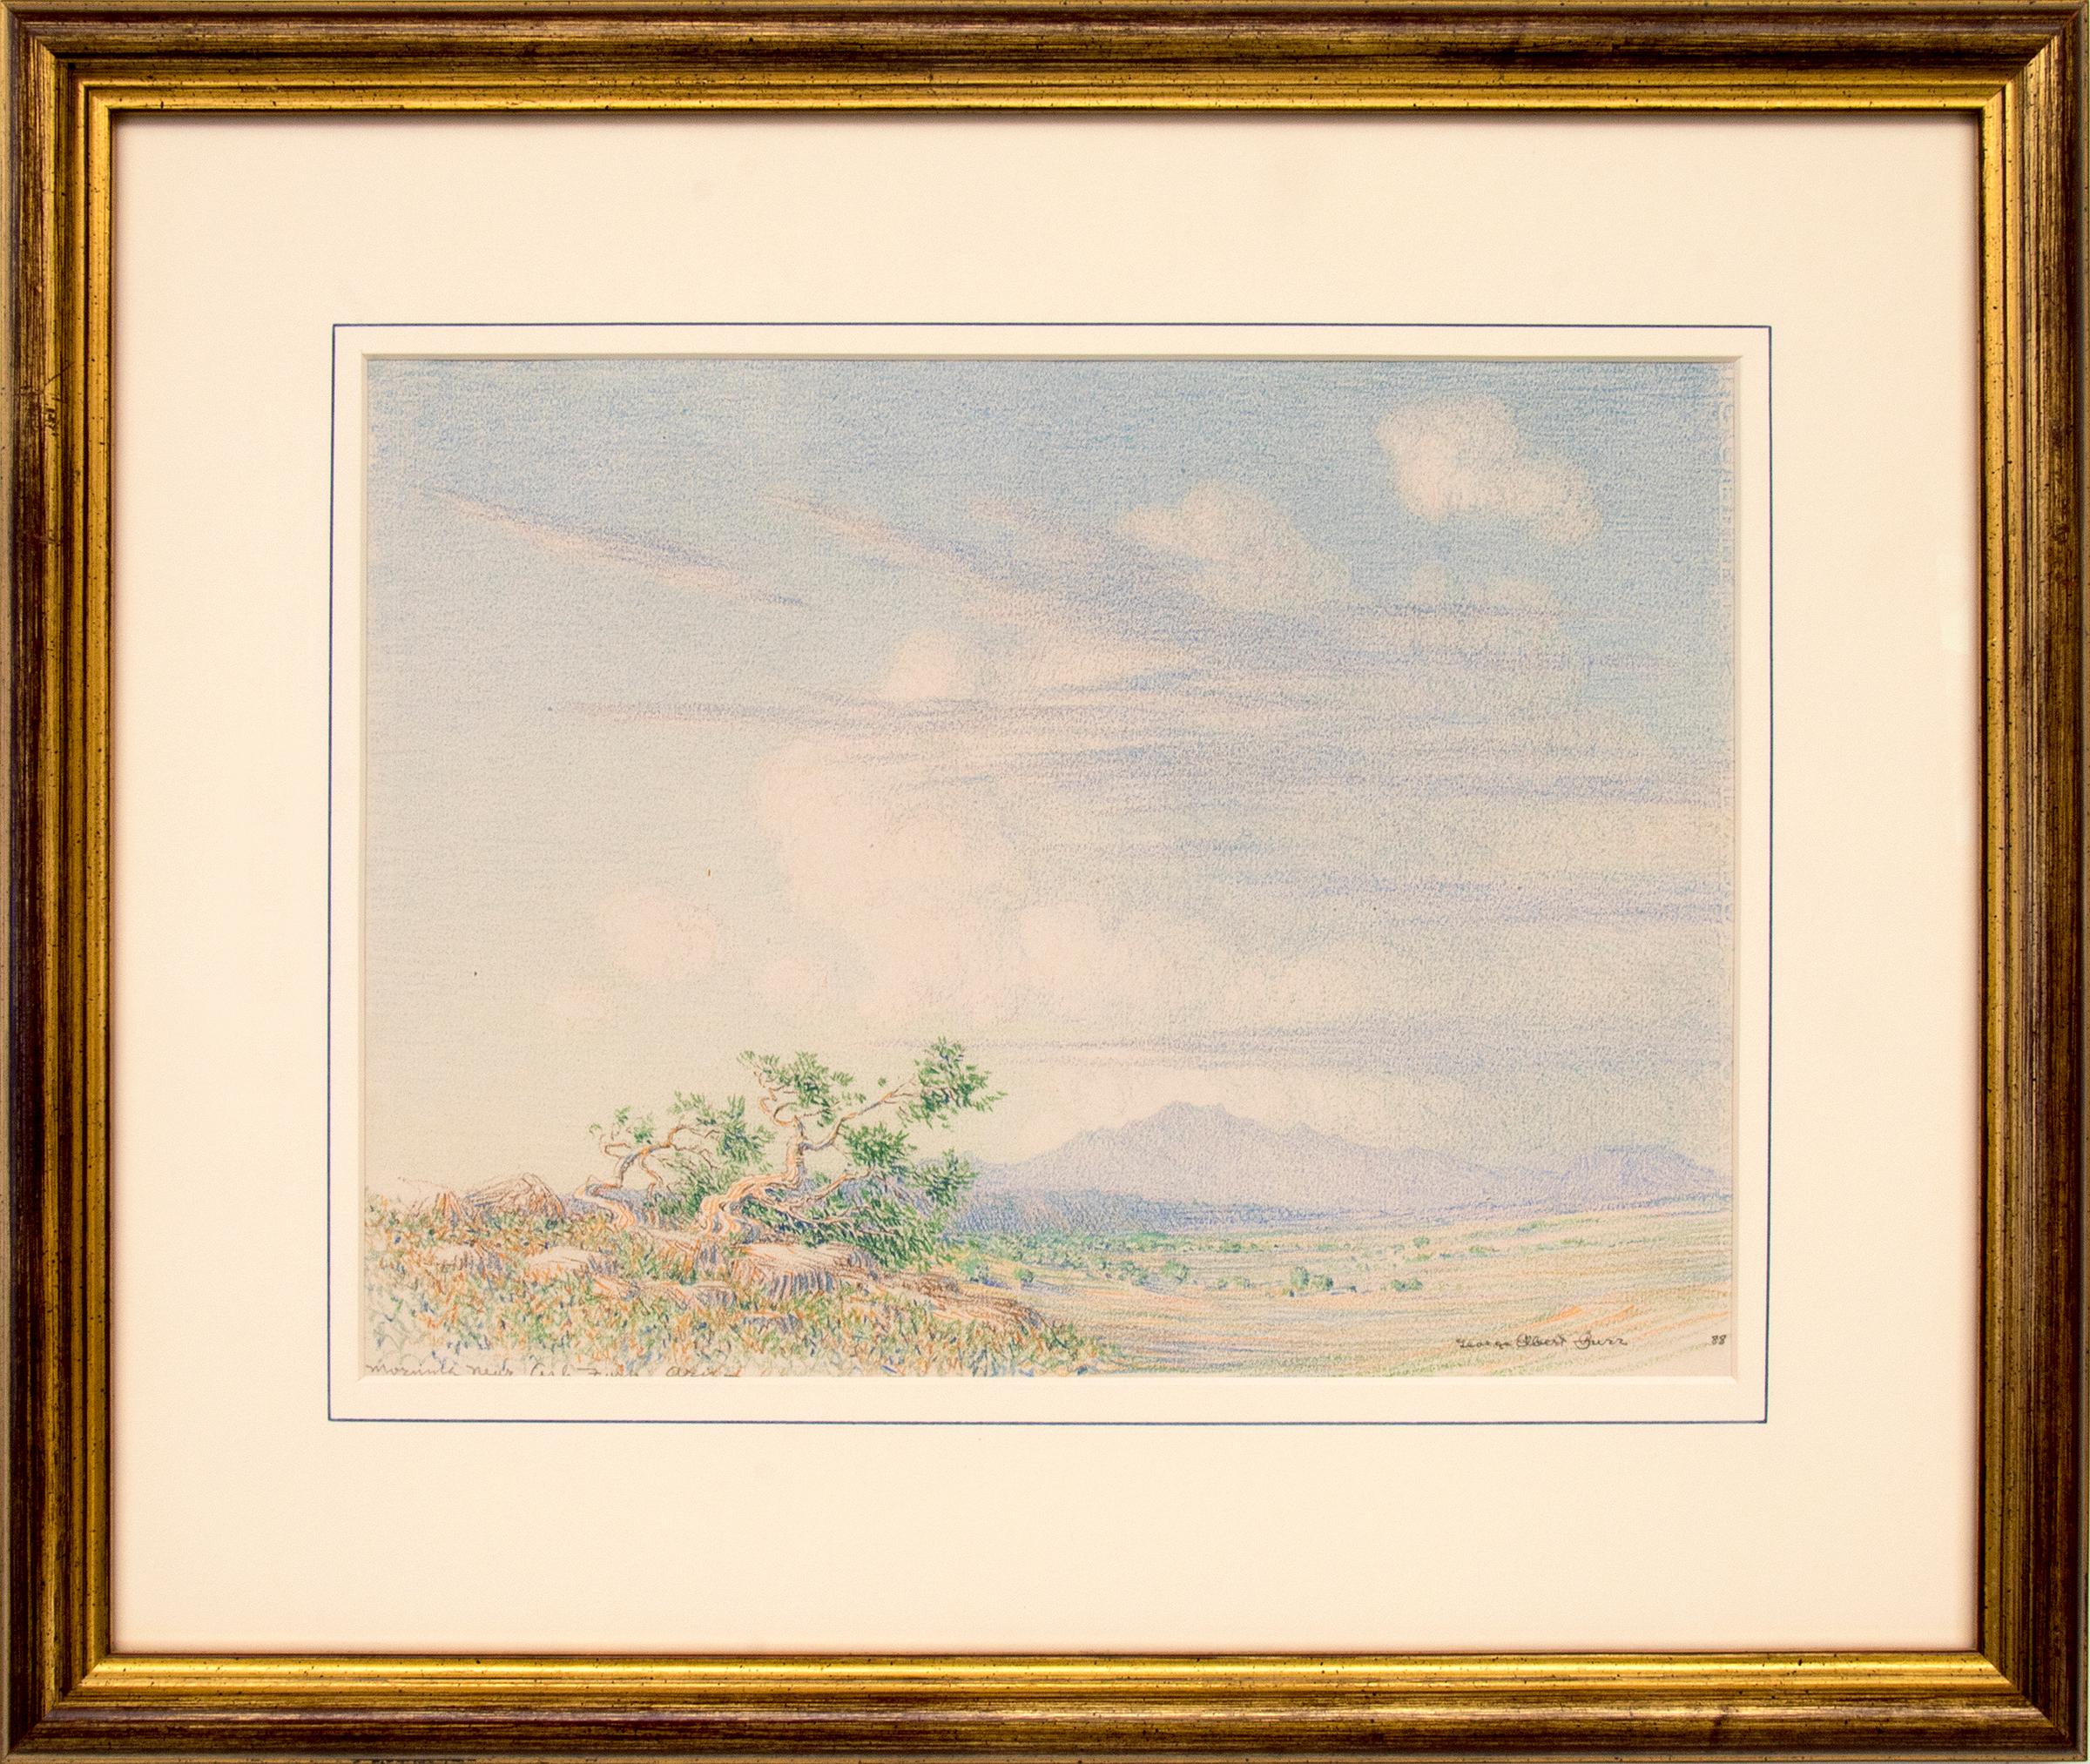 Landscape Art George Elbert Burr - Morning Near Arizona, dessin de paysage du sud-ouest du désert des années 1880